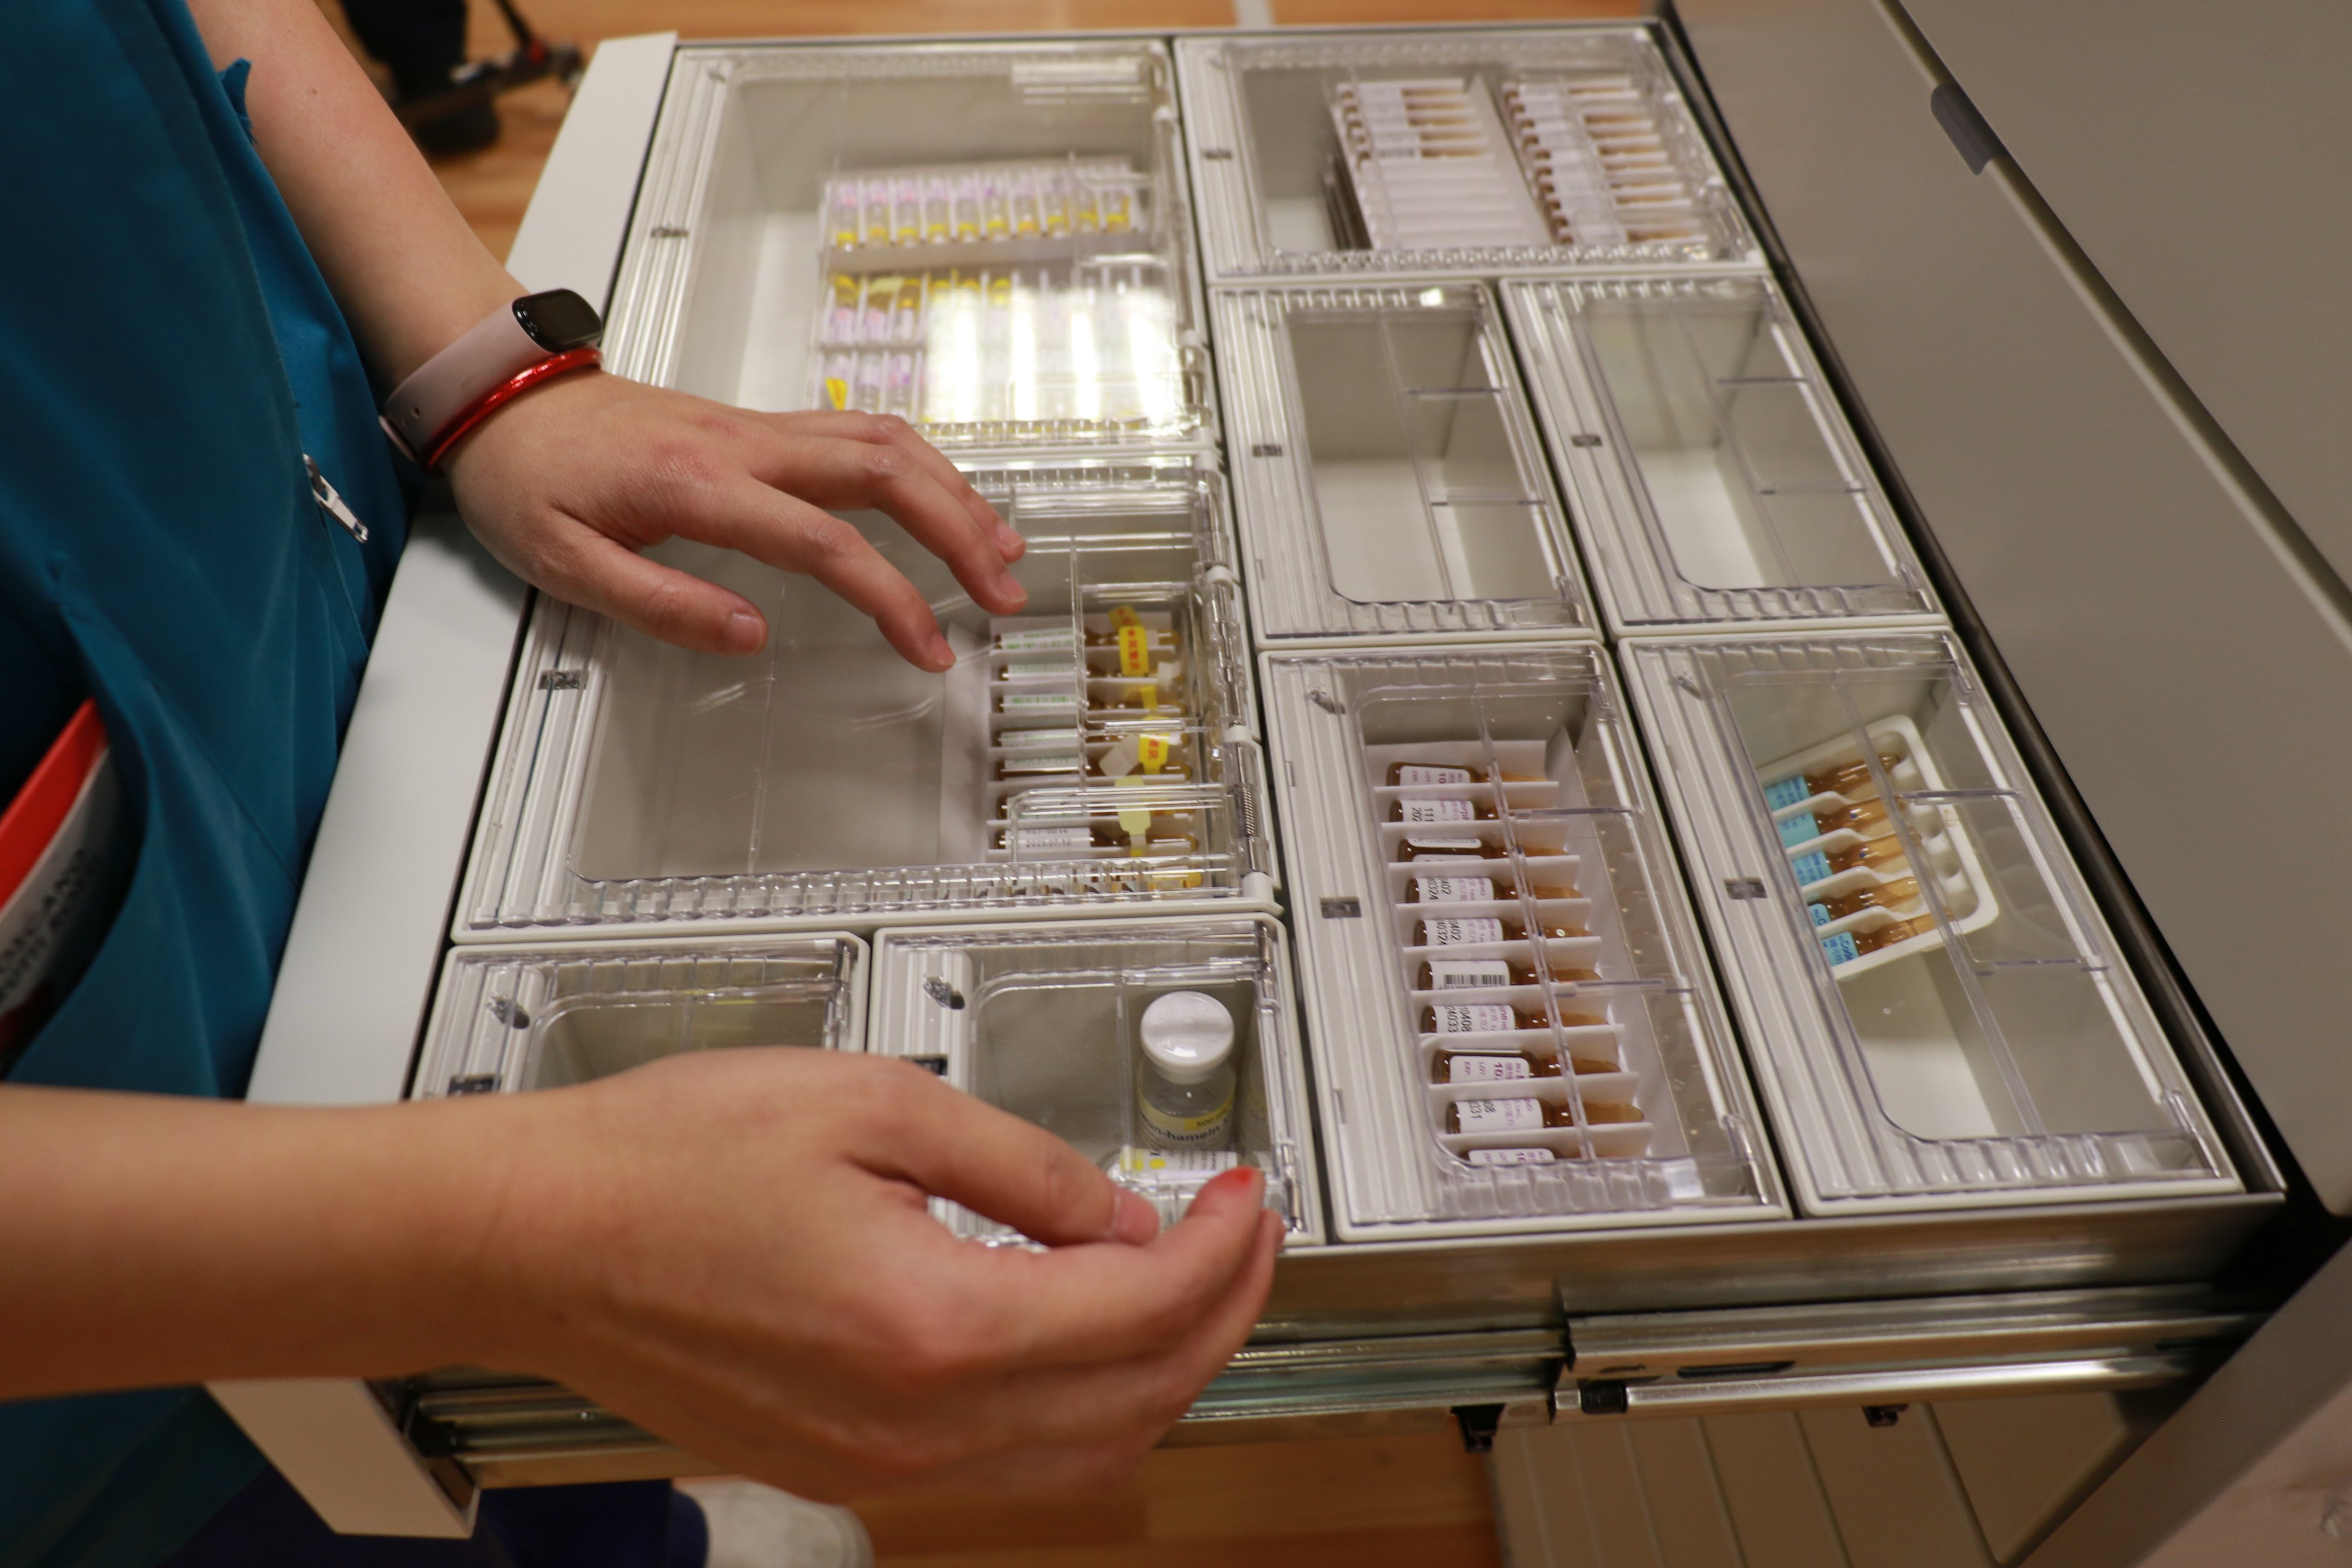 自動調配藥櫃採用一藥一格的儲存方式，讓護理人員只能取得當次藥師完成審核的藥品。